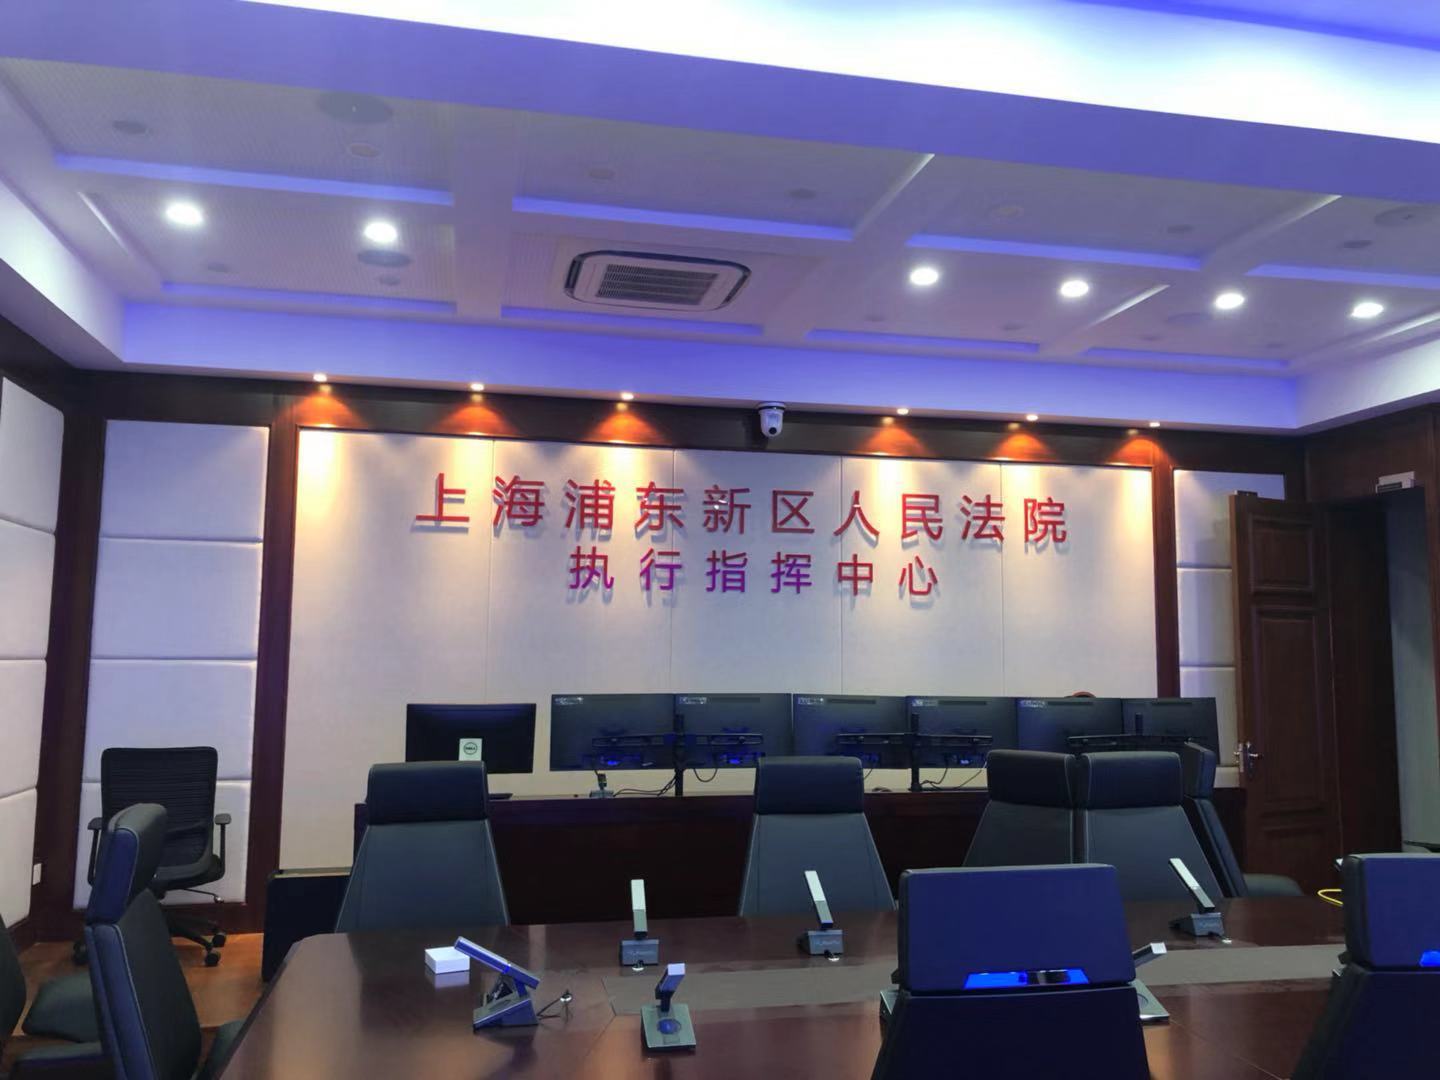 上海市浦东新区人民法院执行指挥中心形象墙